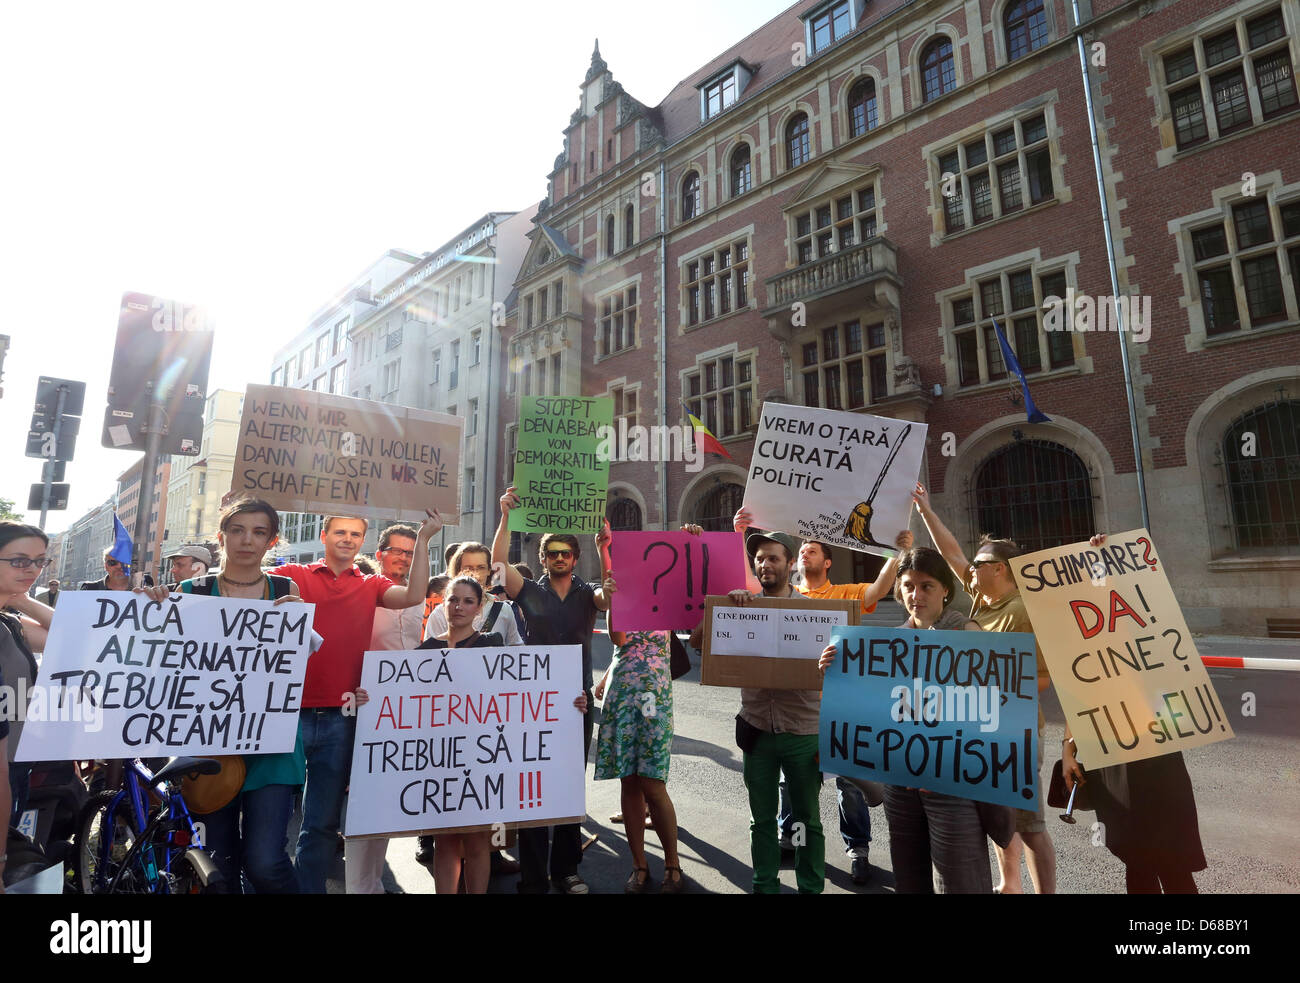 Demonstranten protestieren vor der rumänischen Botschaft in Berlin, Deutschland, 10. Juli 2012. Der Protest richtet sich an der Schwächung der Demokratie in Rumänien. Foto: STEPHANIE PILICK Stockfoto